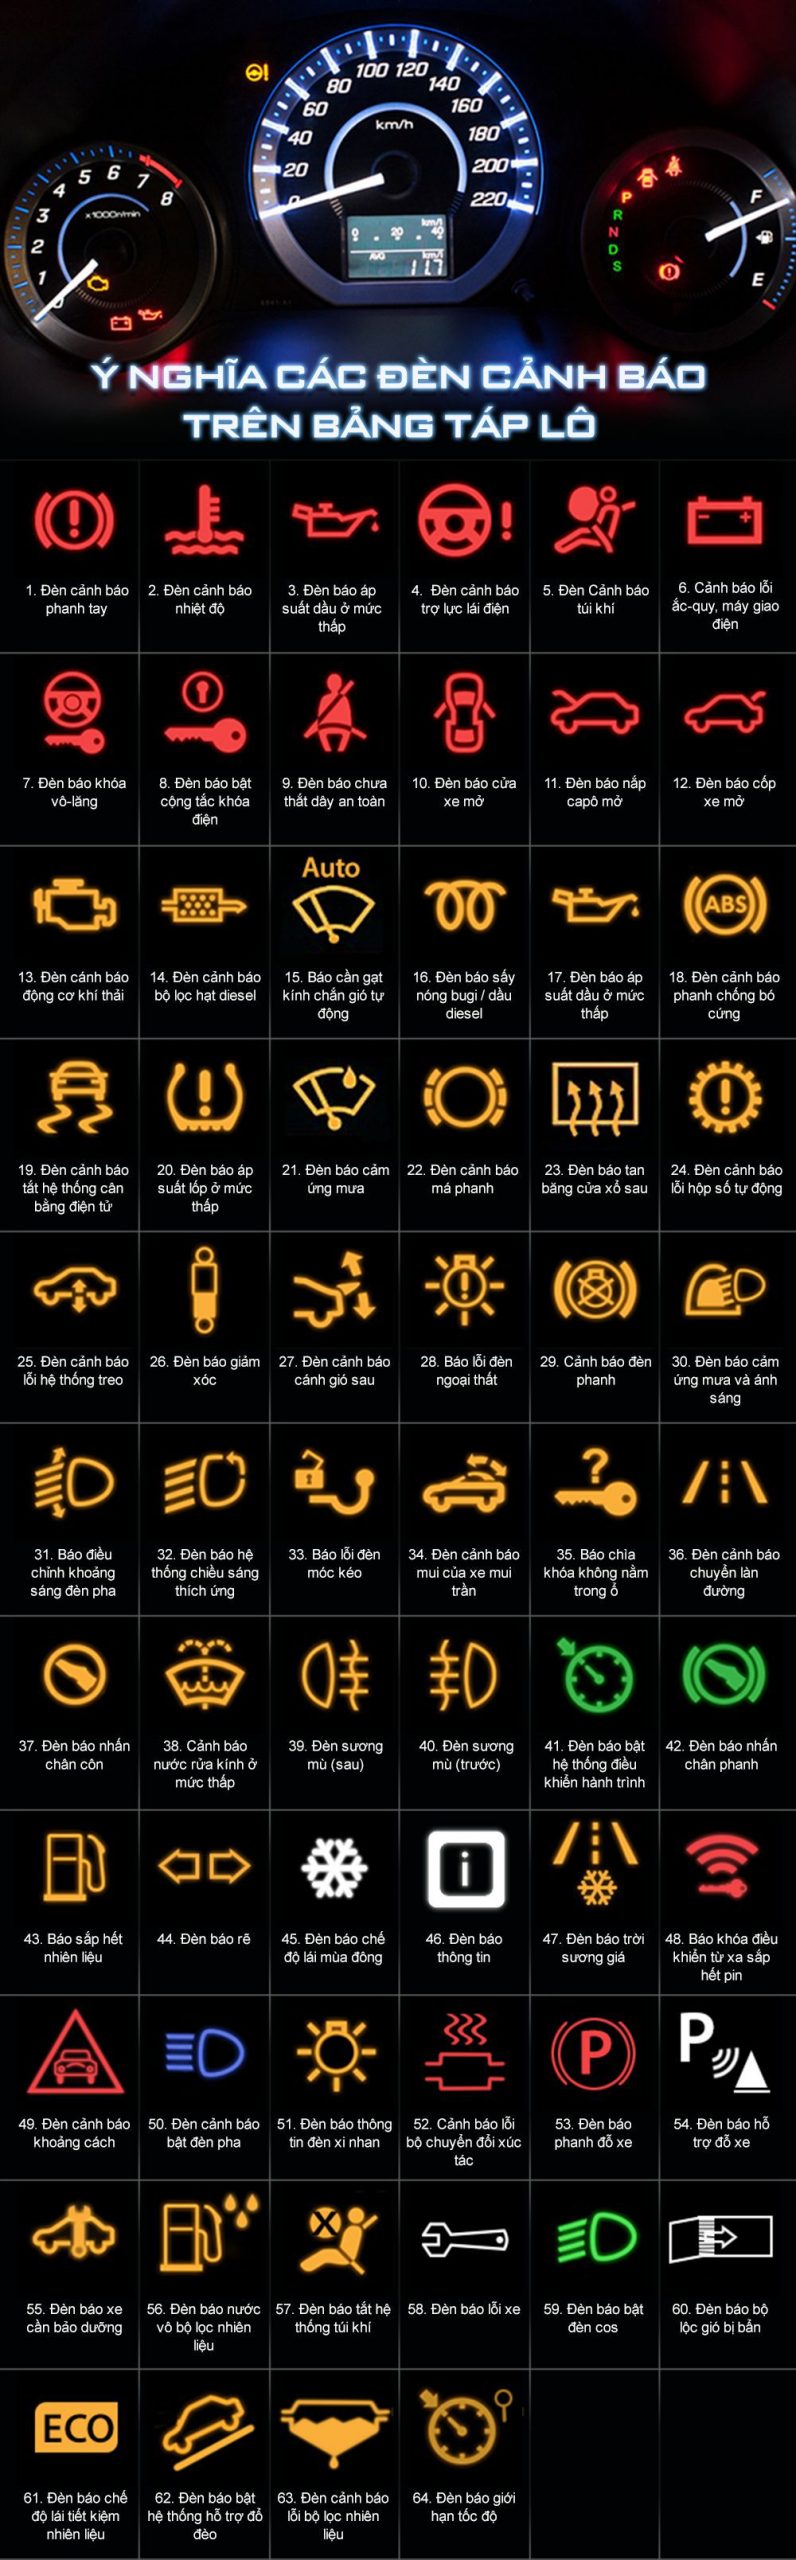 đèn cảnh báo và ký hiệu trên tablo ôtô